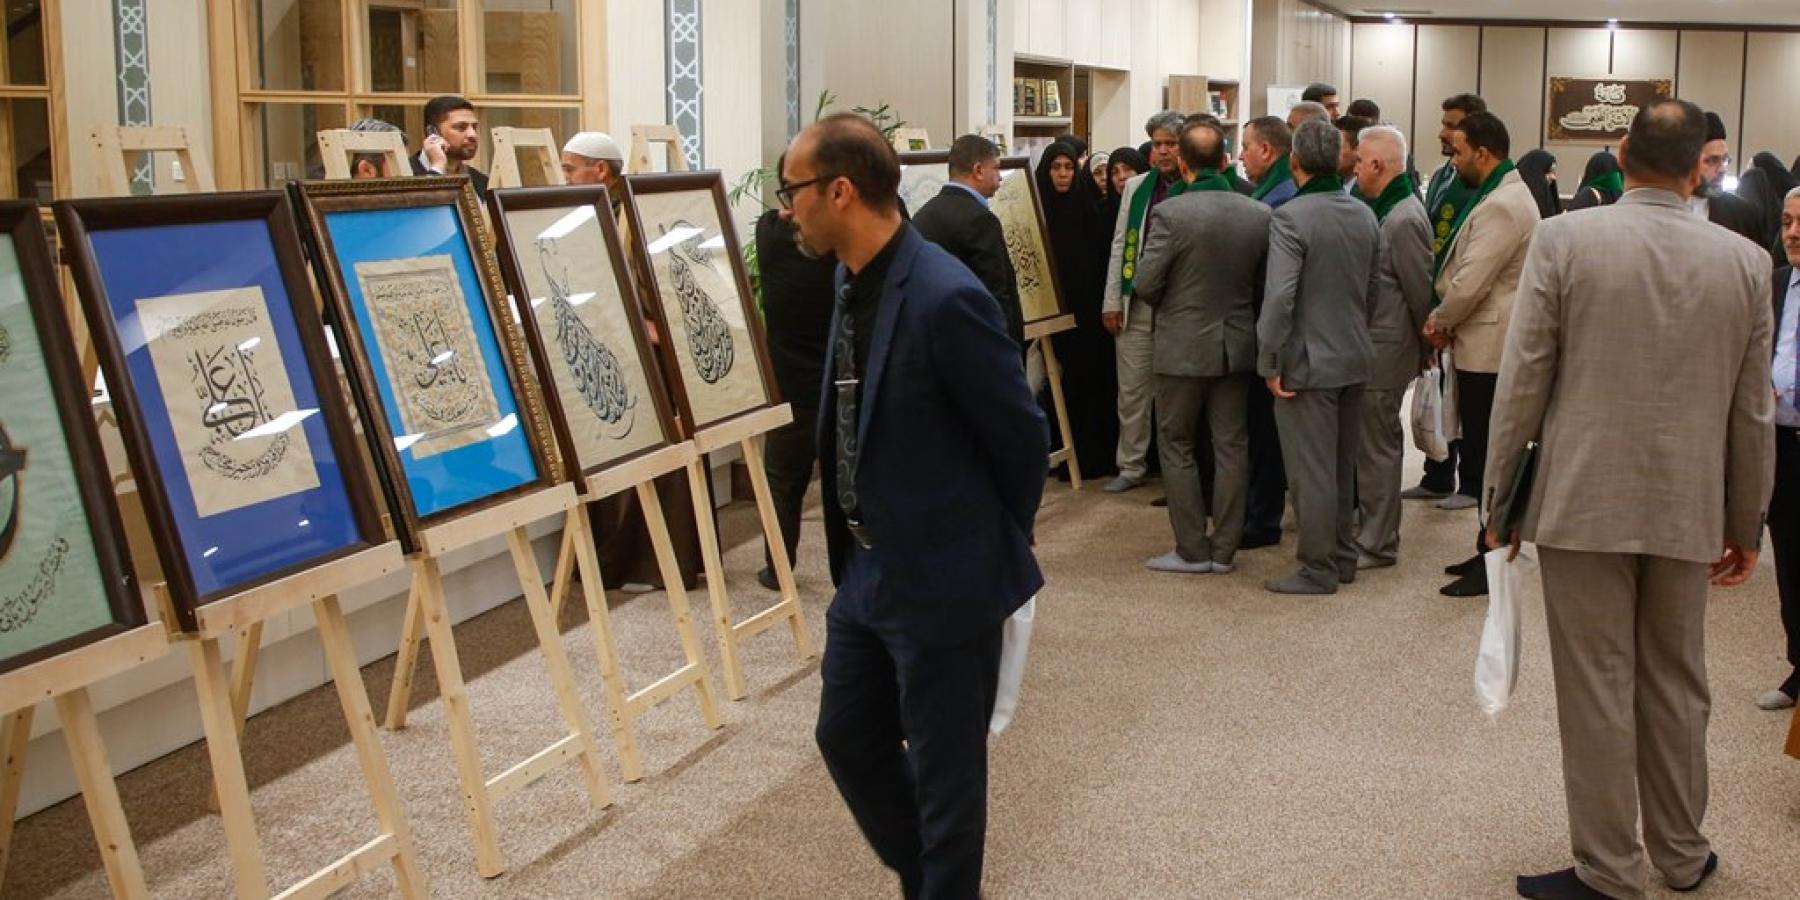 قسم الشؤون الفكرية والثقافية يُقيم معرض لوحات الخط العربي ضمن فعاليات إحياء اليوم العالمي للُّغة العربية 